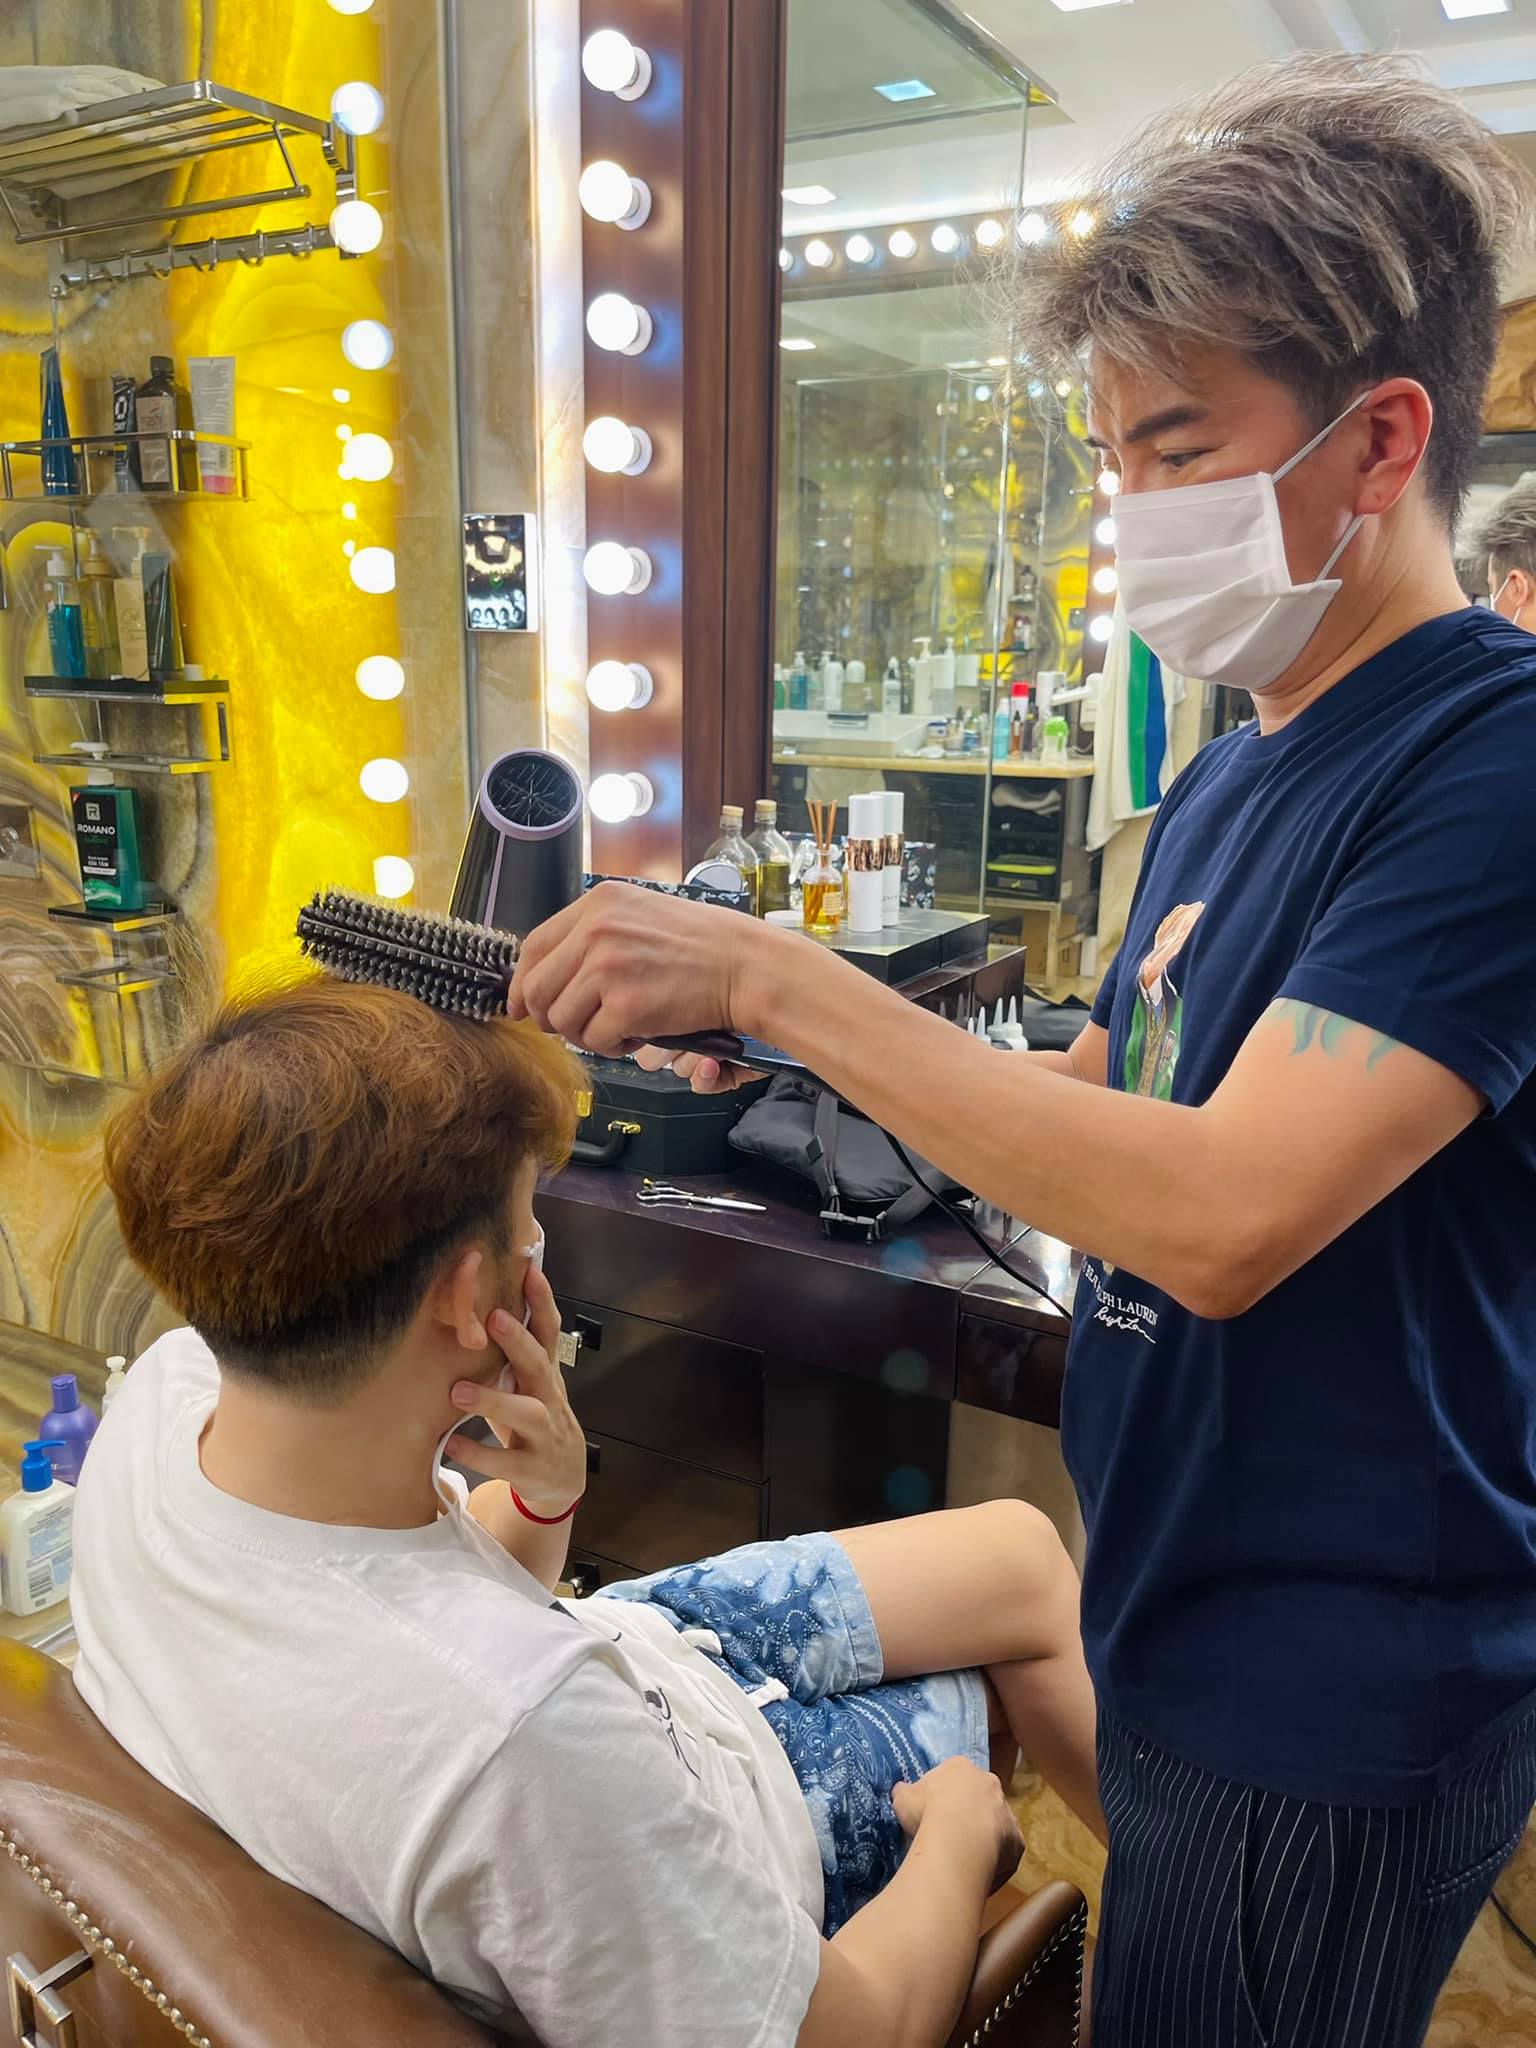 hướng dẫn cắt tóc cơ bản dễ nhất cho những bạn mới học nghề cắt tóc nam  barber  YouTube